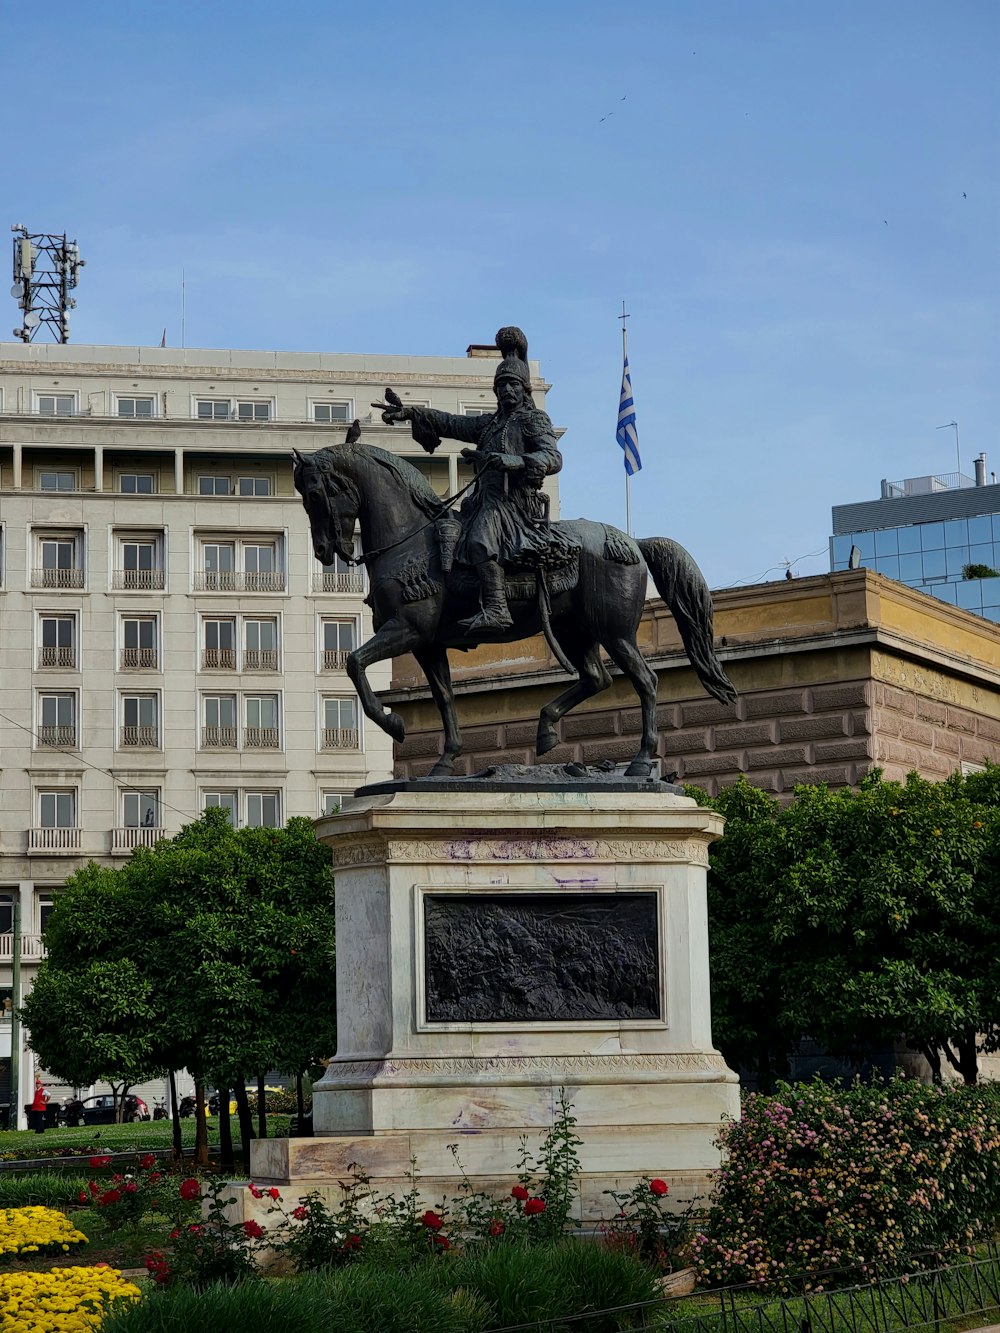 uma estátua de um homem em um cavalo na frente de um edifício